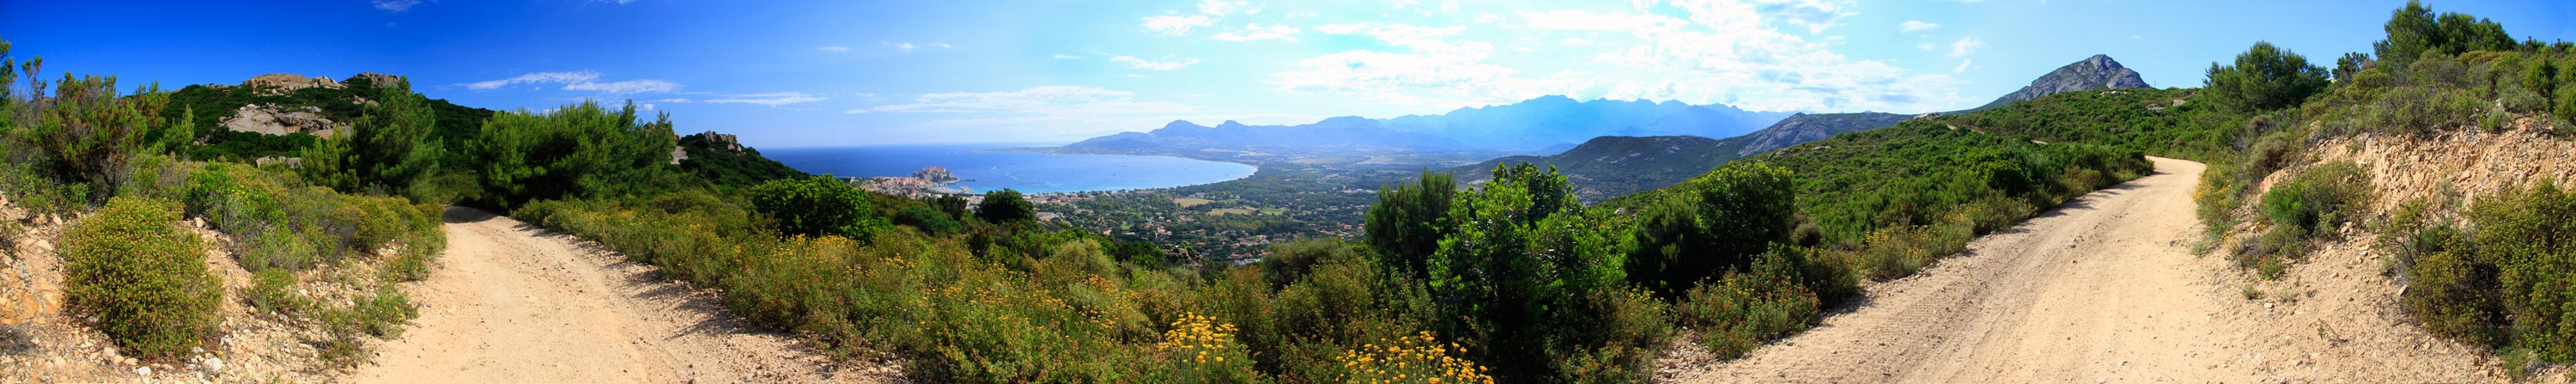 Die Bucht von Calvi (Korsika)